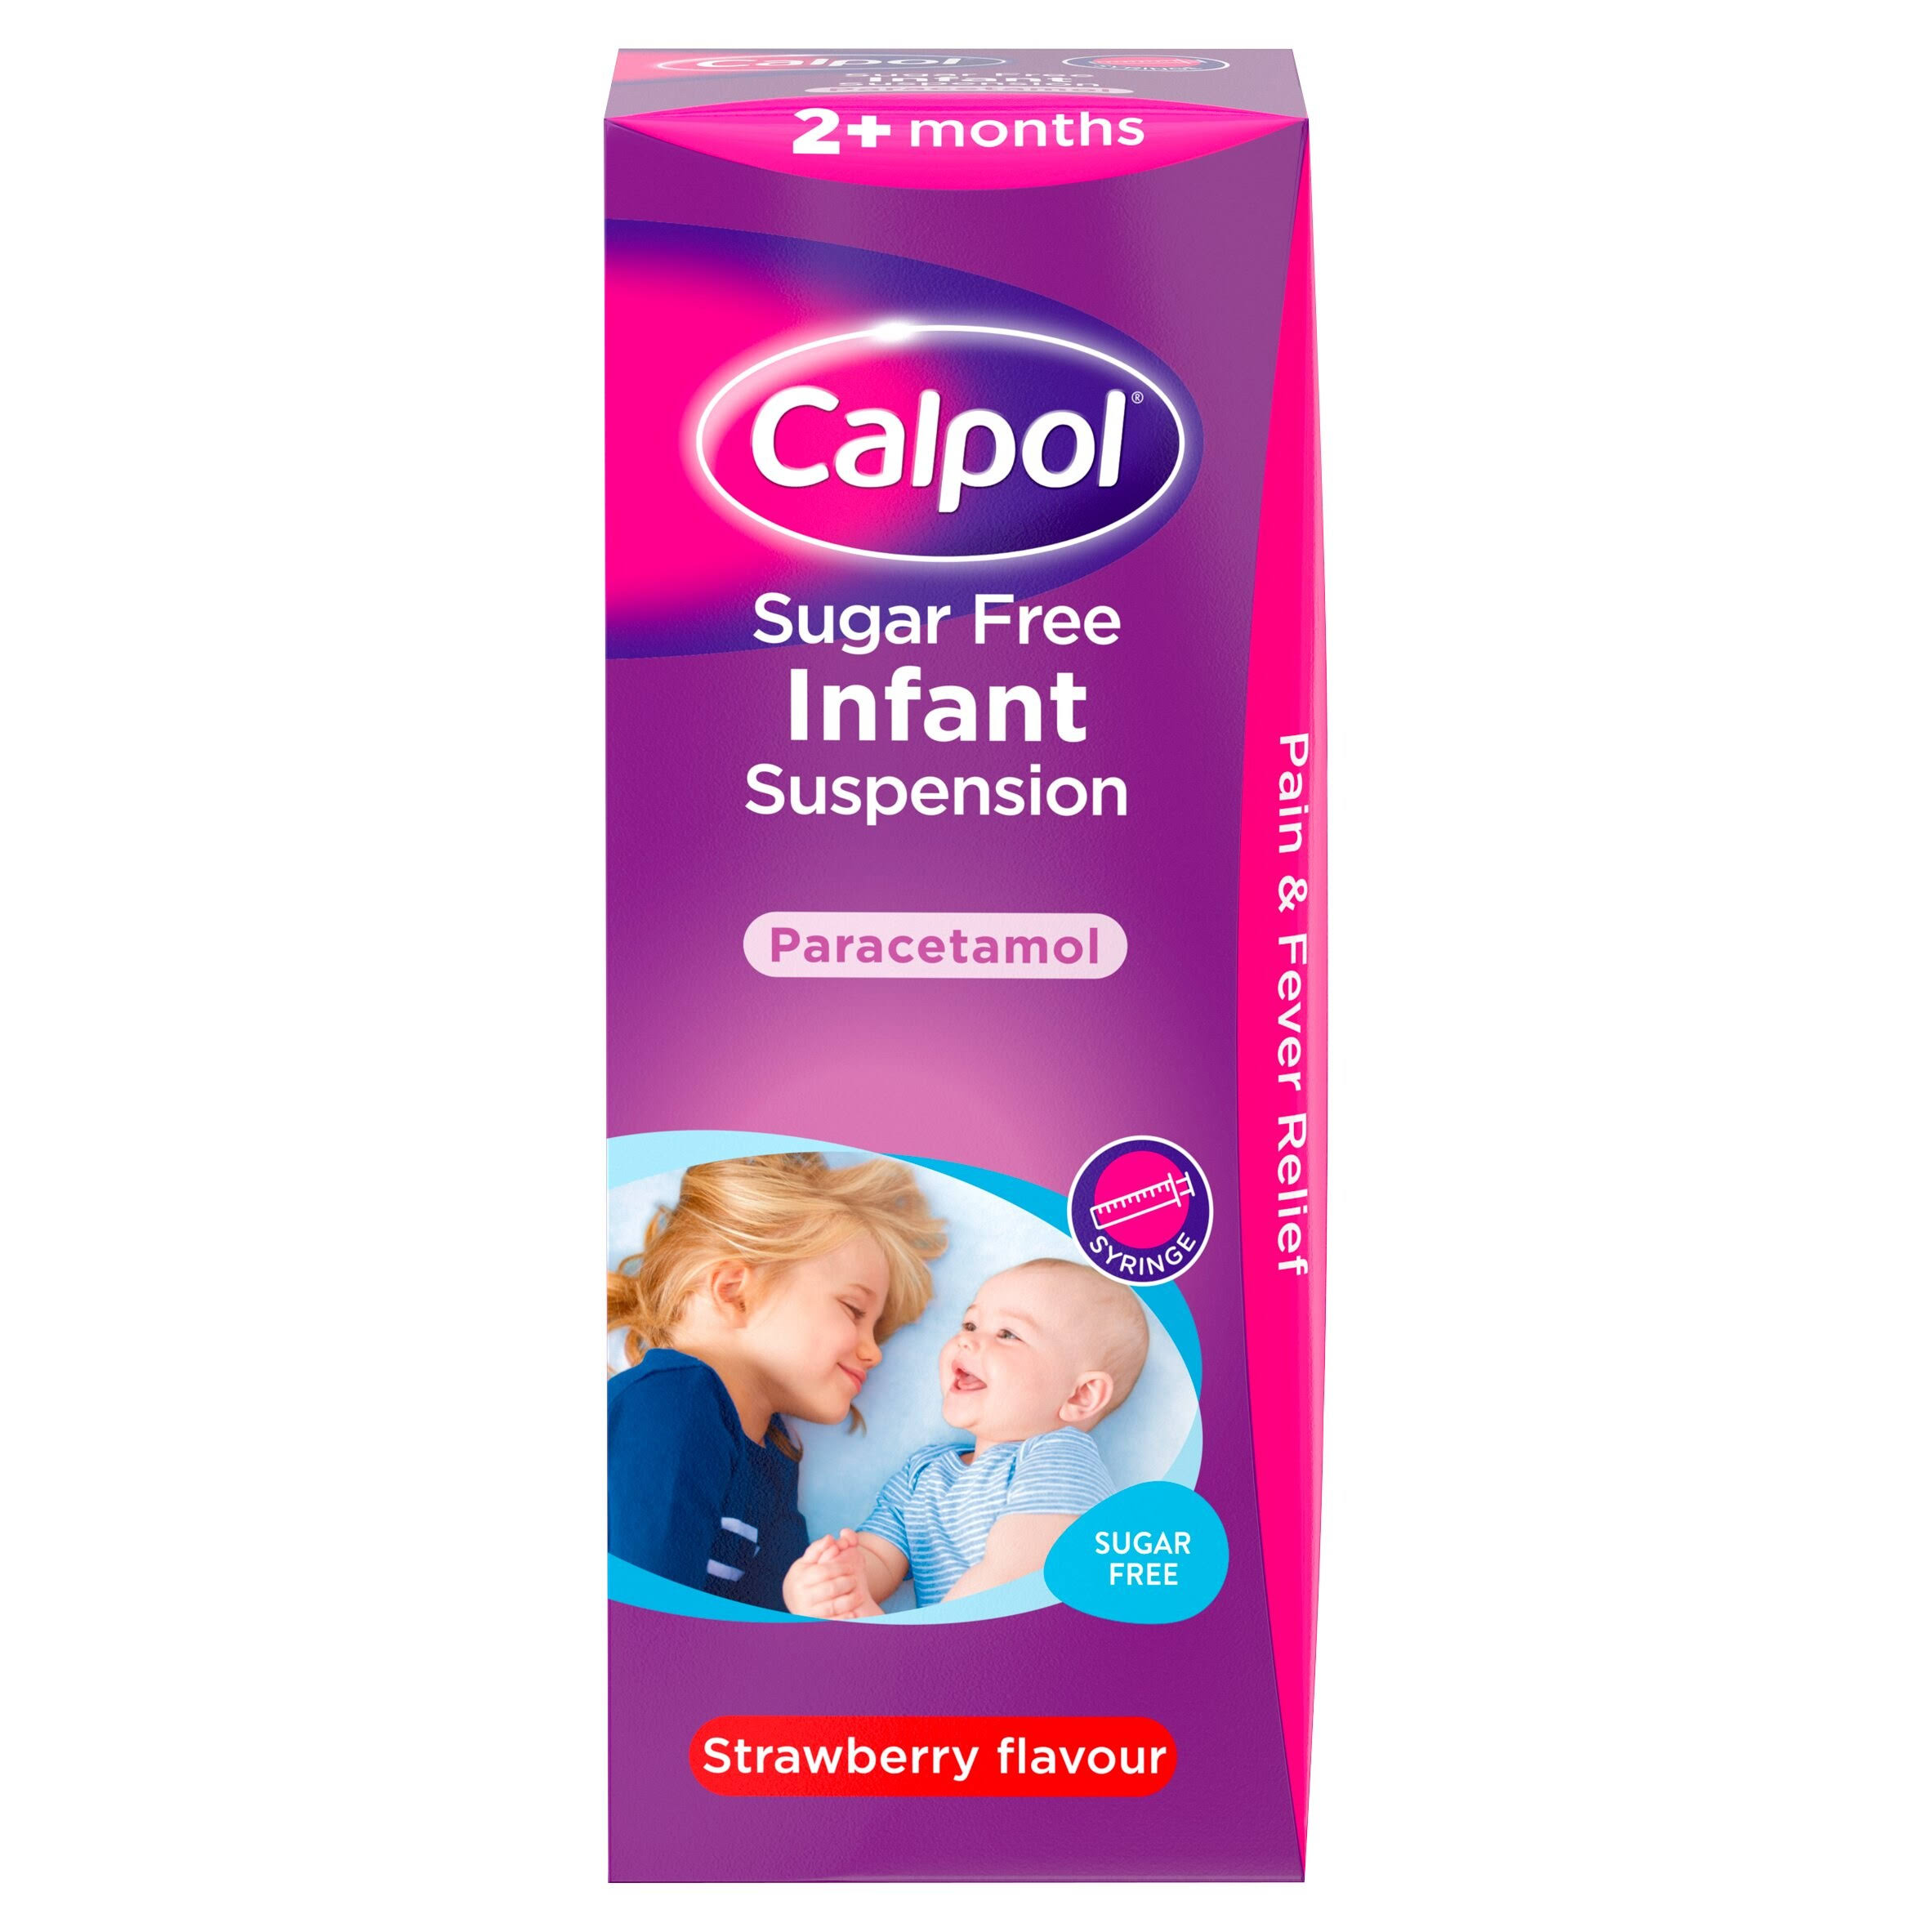 Calpol Sugar Free Infant Suspension Paracetamol - Strawberry Flavour, 2 Plus Months, 200ml